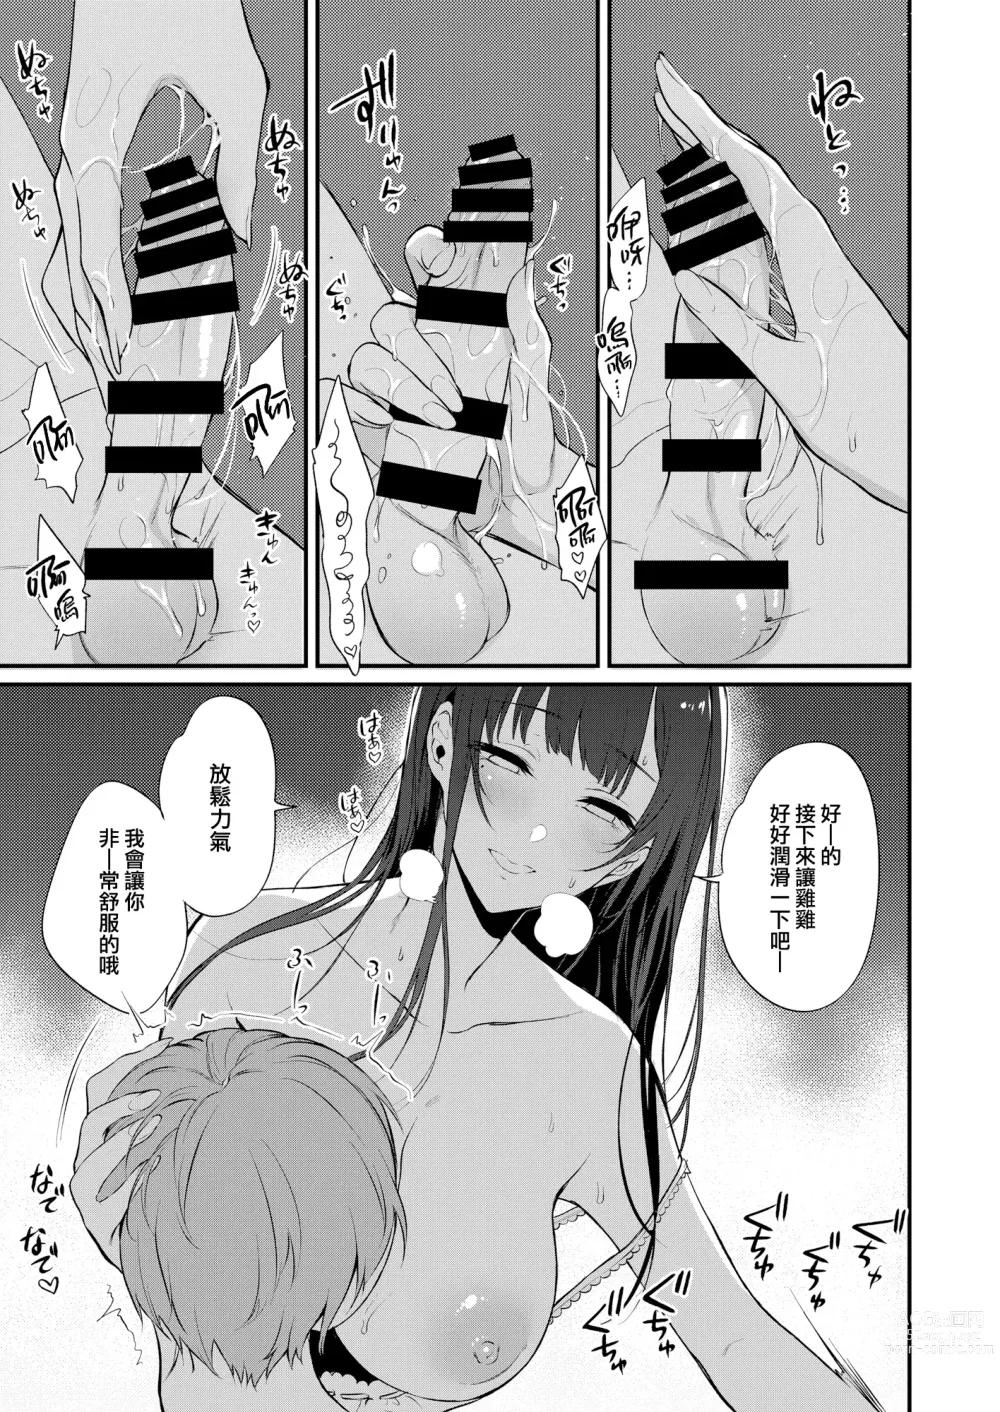 Page 15 of doujinshi Ane Naru Mono 10